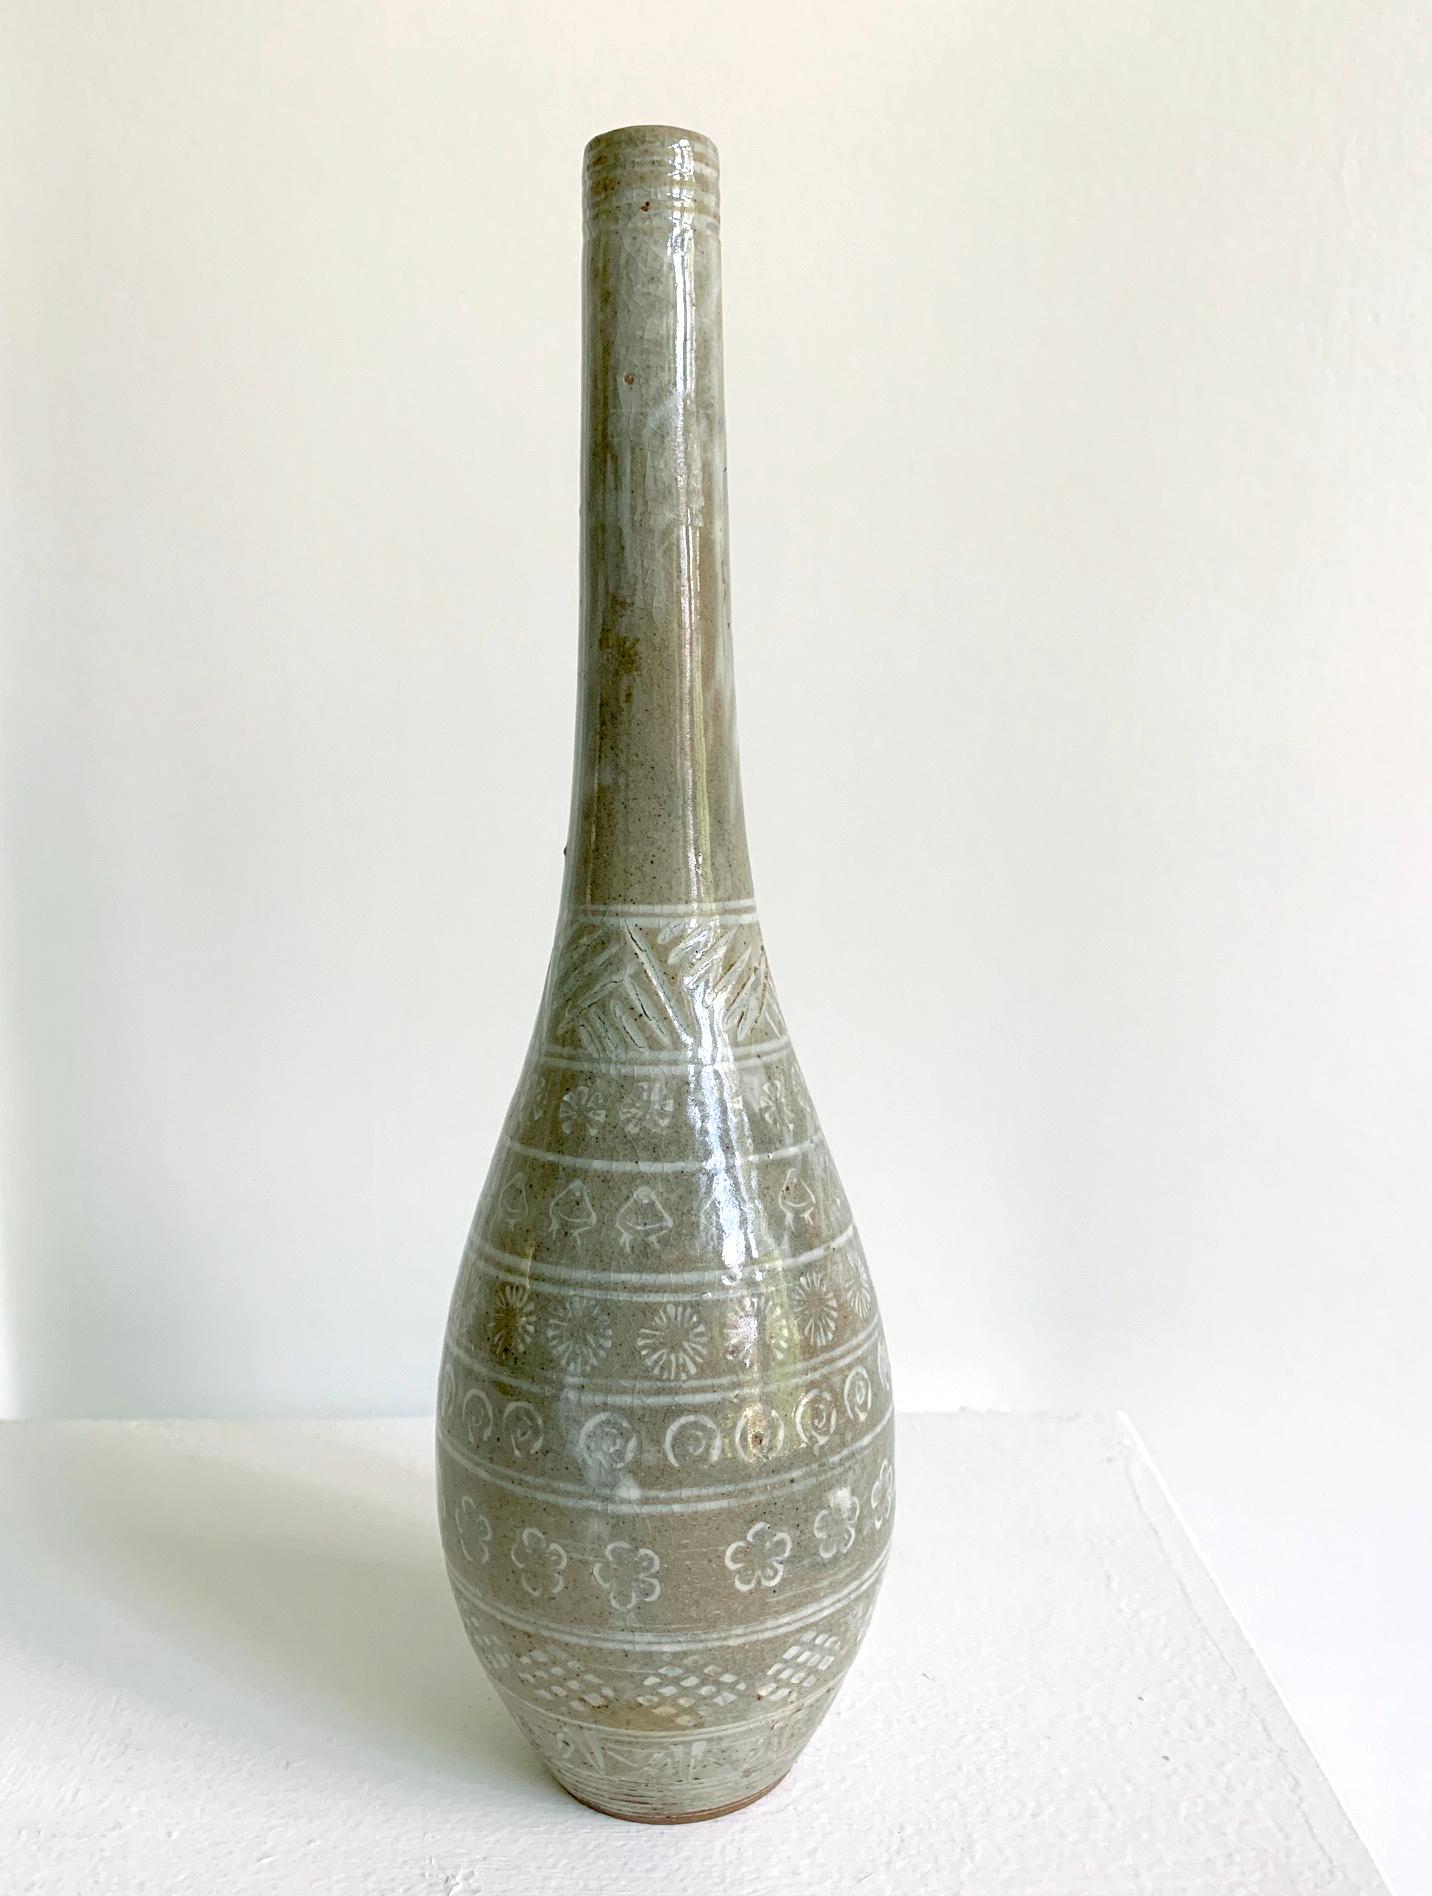 Schlanke japanische Langhalsvase aus Keramik im Stil von Mishima, 19. Jahrhundert, Meiji-Zeit. Die Mishima-Keramik wurde ursprünglich von drei Inseln in Taiwan und dann aus Korea in der Edo-Periode (15.-16. Jahrhundert) für Teegeschirr importiert.